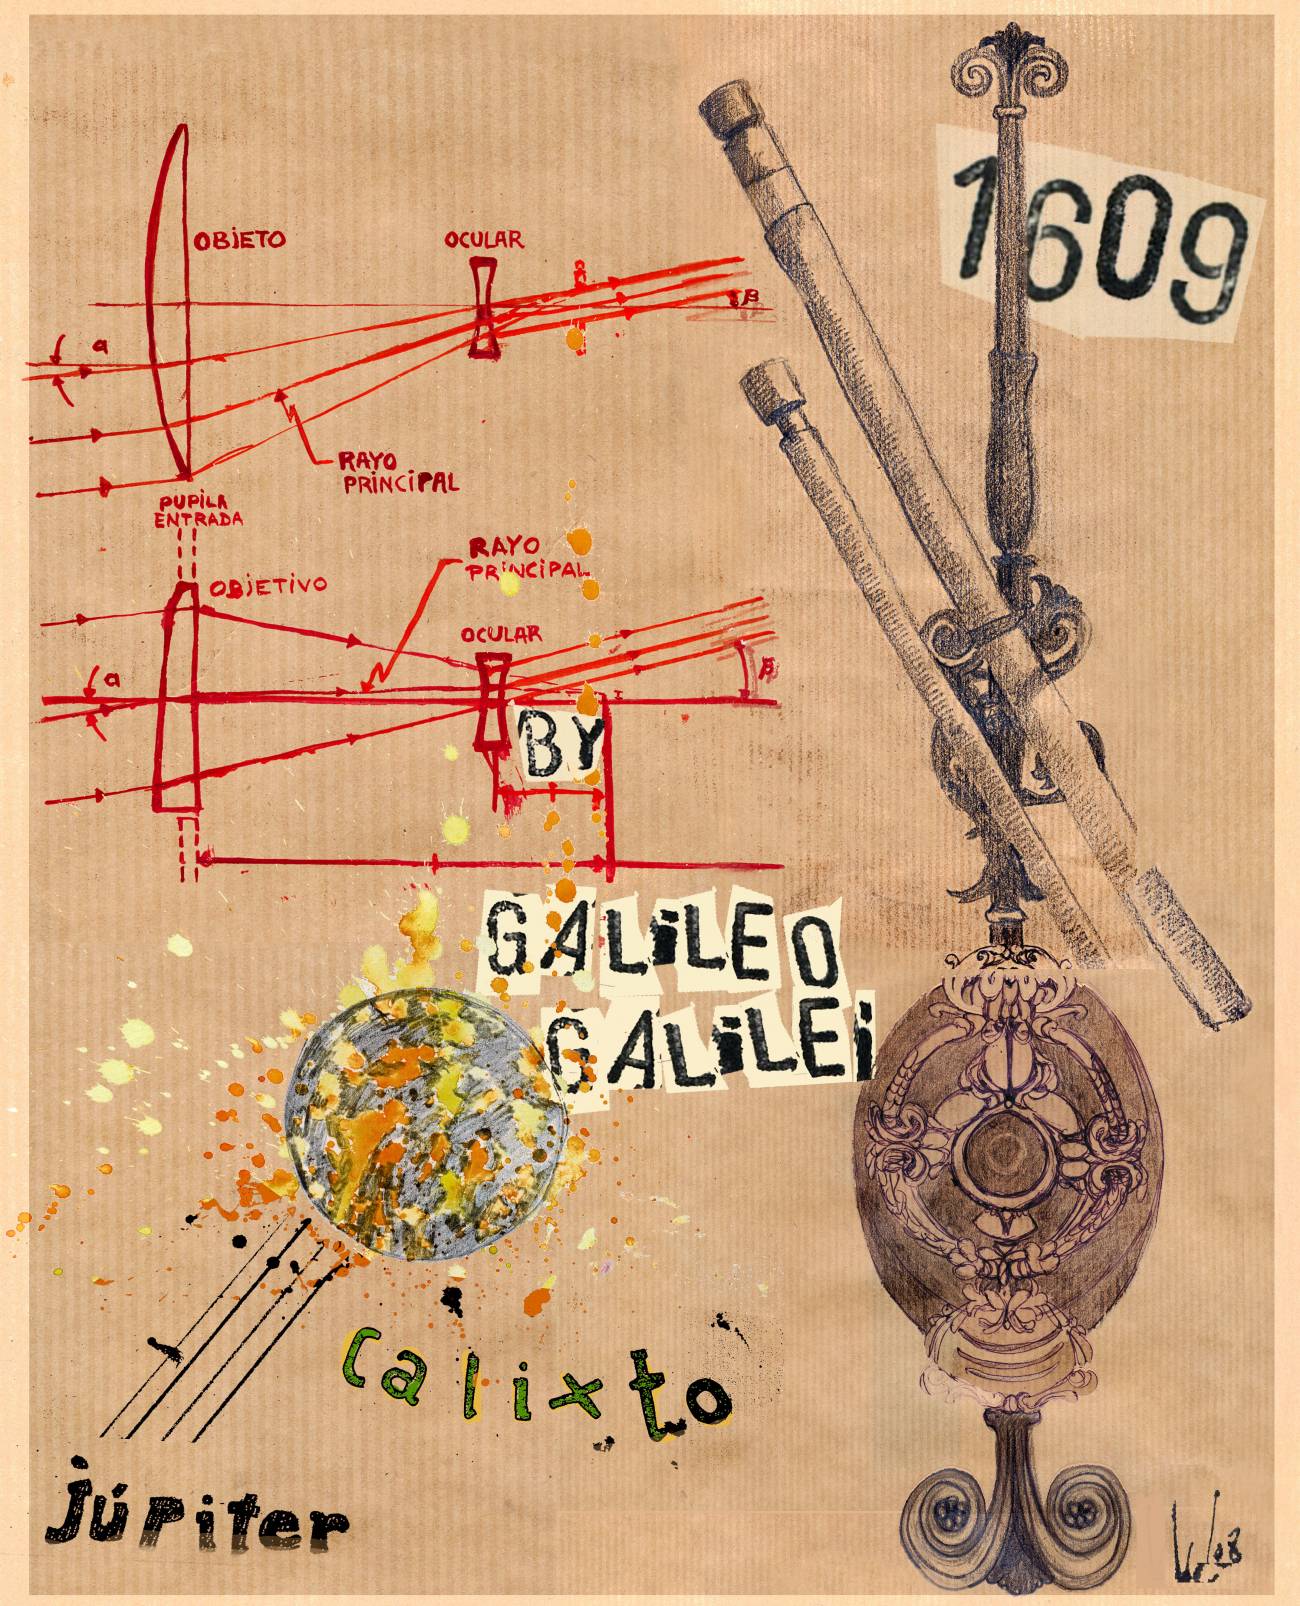 1610: Galileo Galilei descubre Calisto, el cuarto satélite de Júpiter